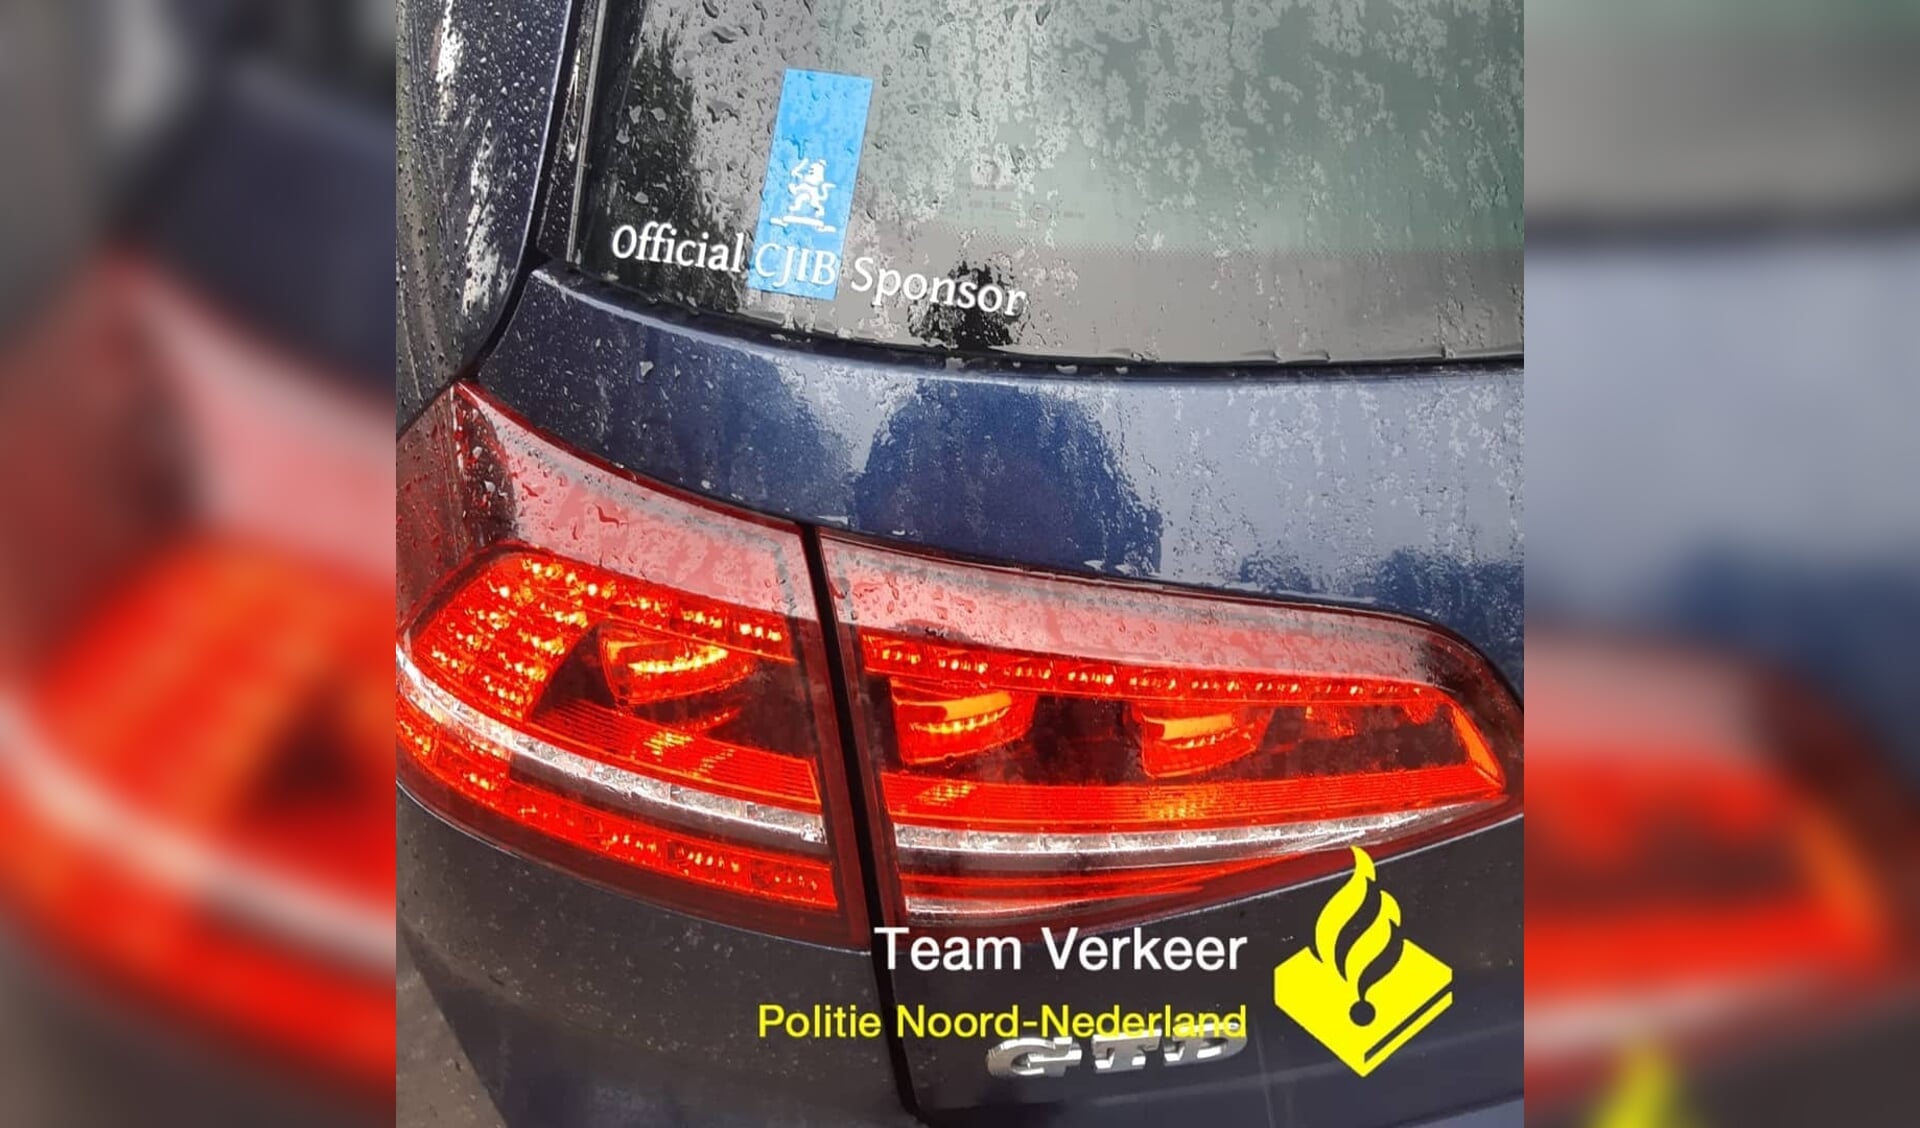 De sticker op de auto van de 'CJIB-sponsors'. (foto Politie/Team Verkeer Noord-Nederland)